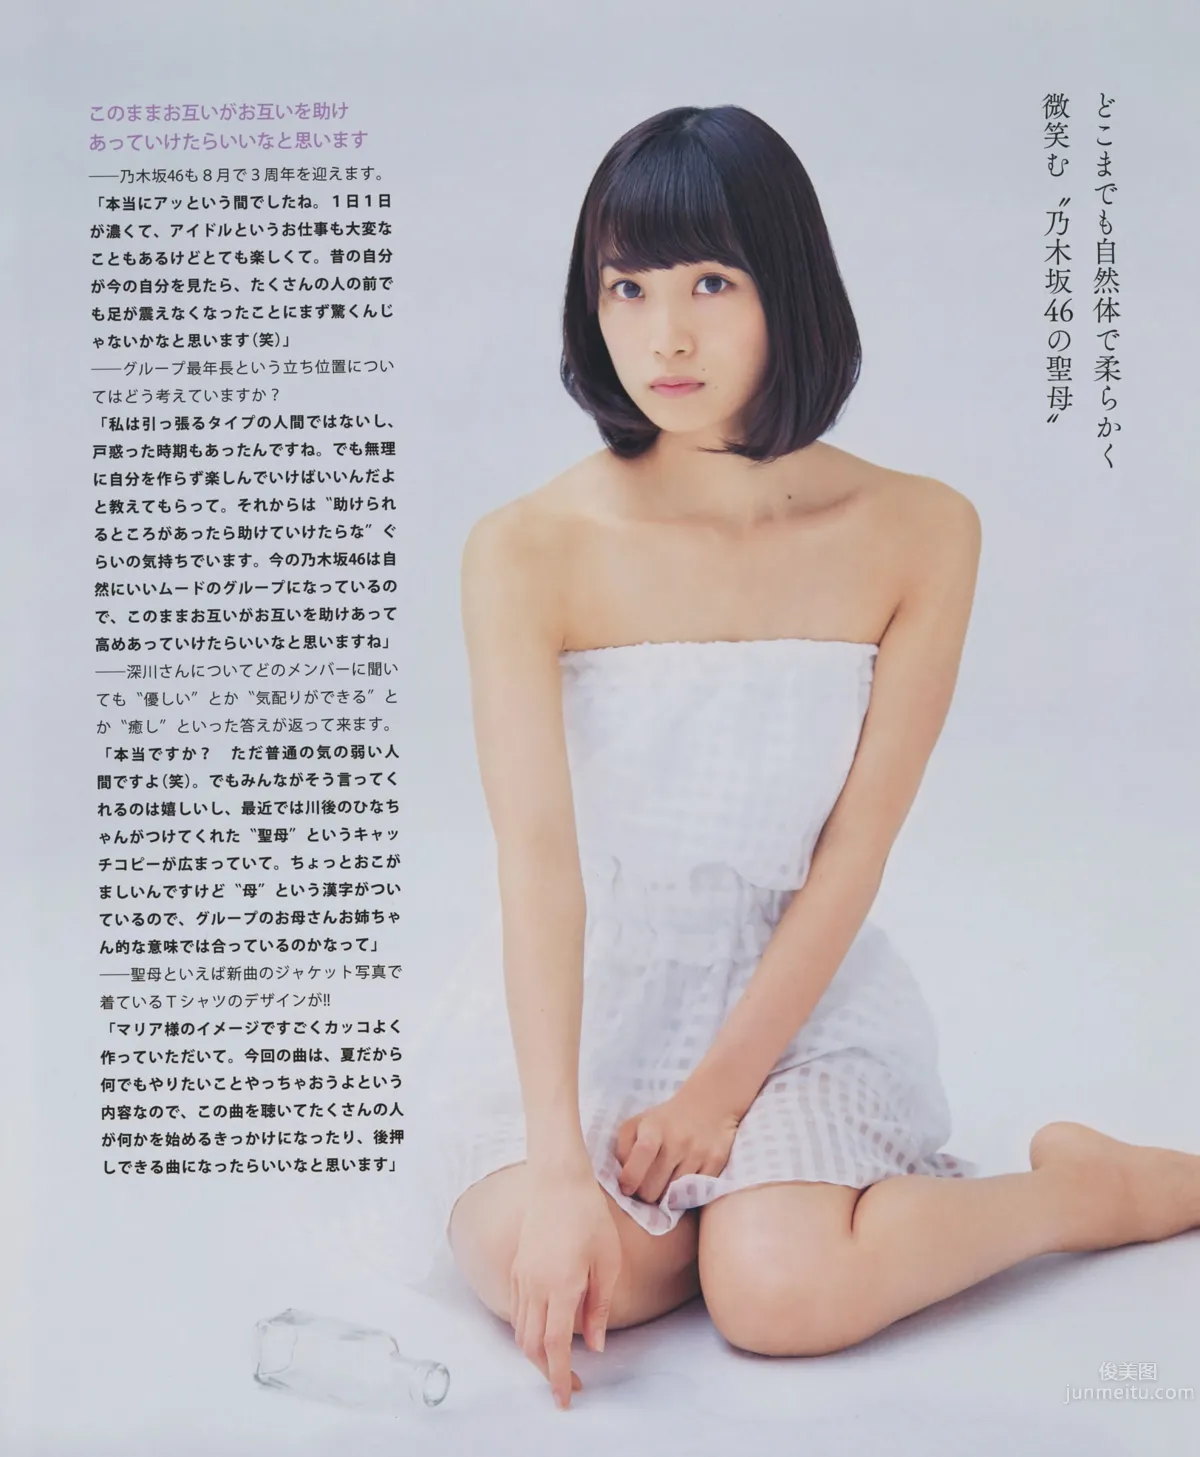 [Bomb Magazine] 2014.08 09 乃木坂46 SKE48_3